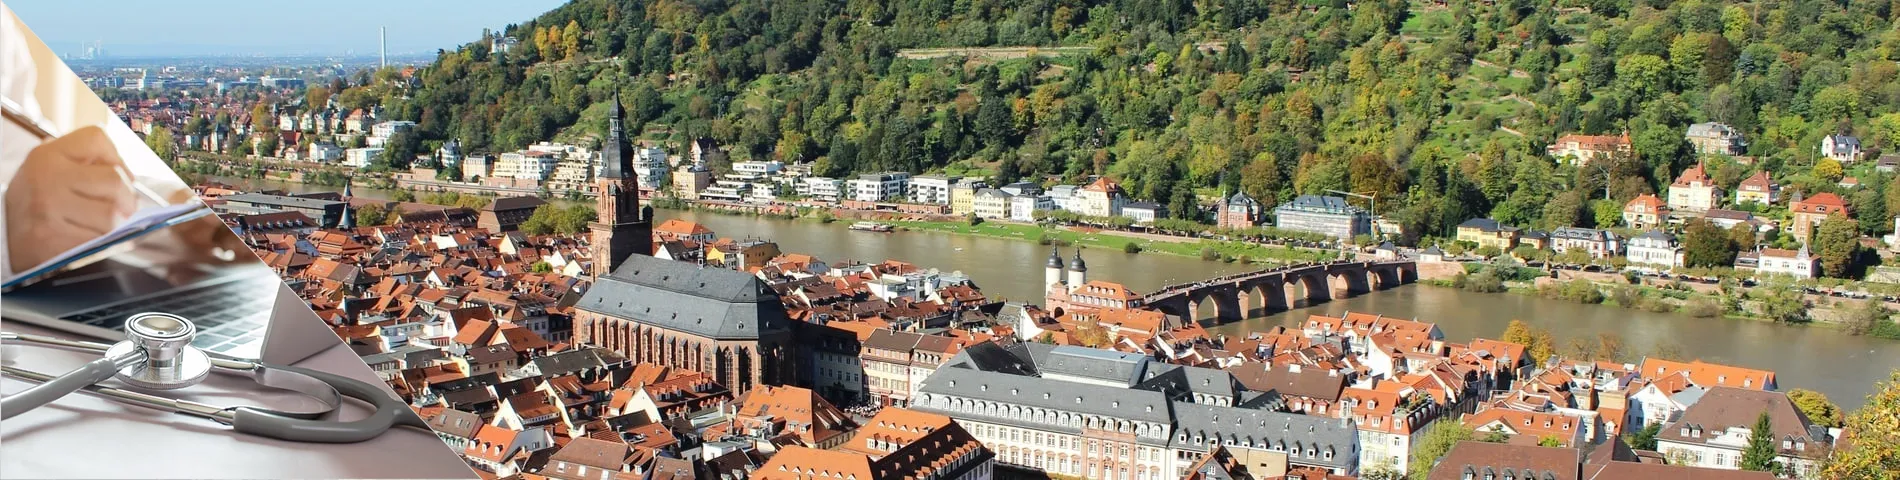 Heidelberg - Nemčina pre doktorov a sestry